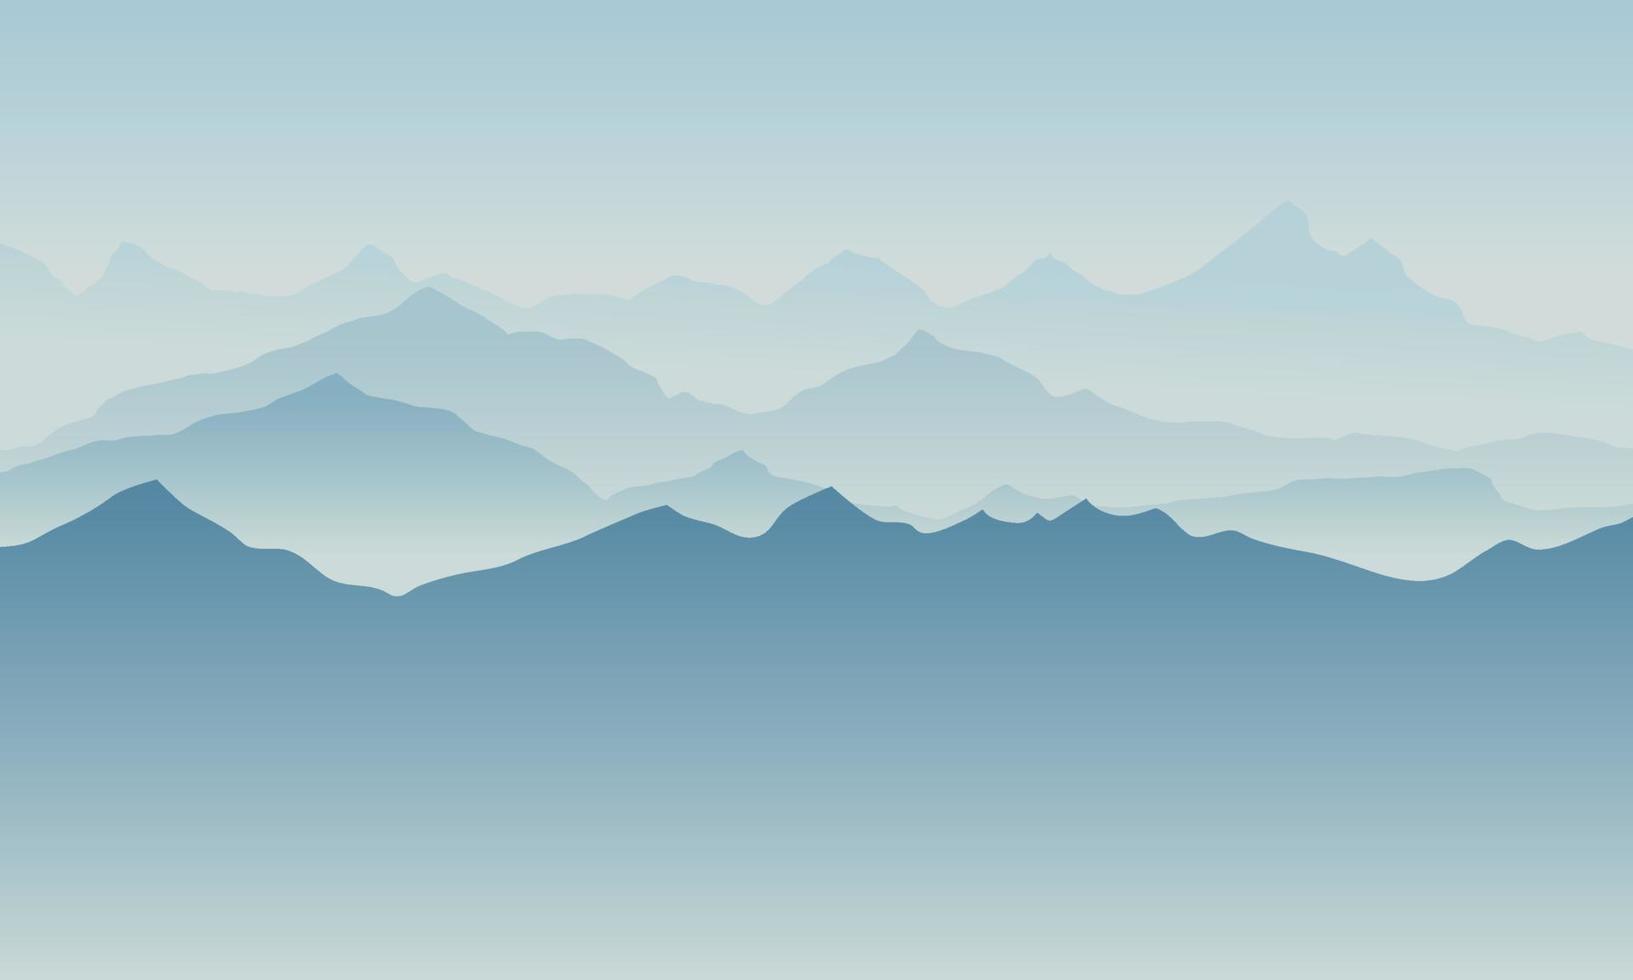 hermoso paisaje de silueta de montaña azul con niebla y amanecer y atardecer en el fondo de las montañas. concepto de senderismo y actividades al aire libre. vector. bueno para papel tapiz, banner del sitio, portada, afiche vector